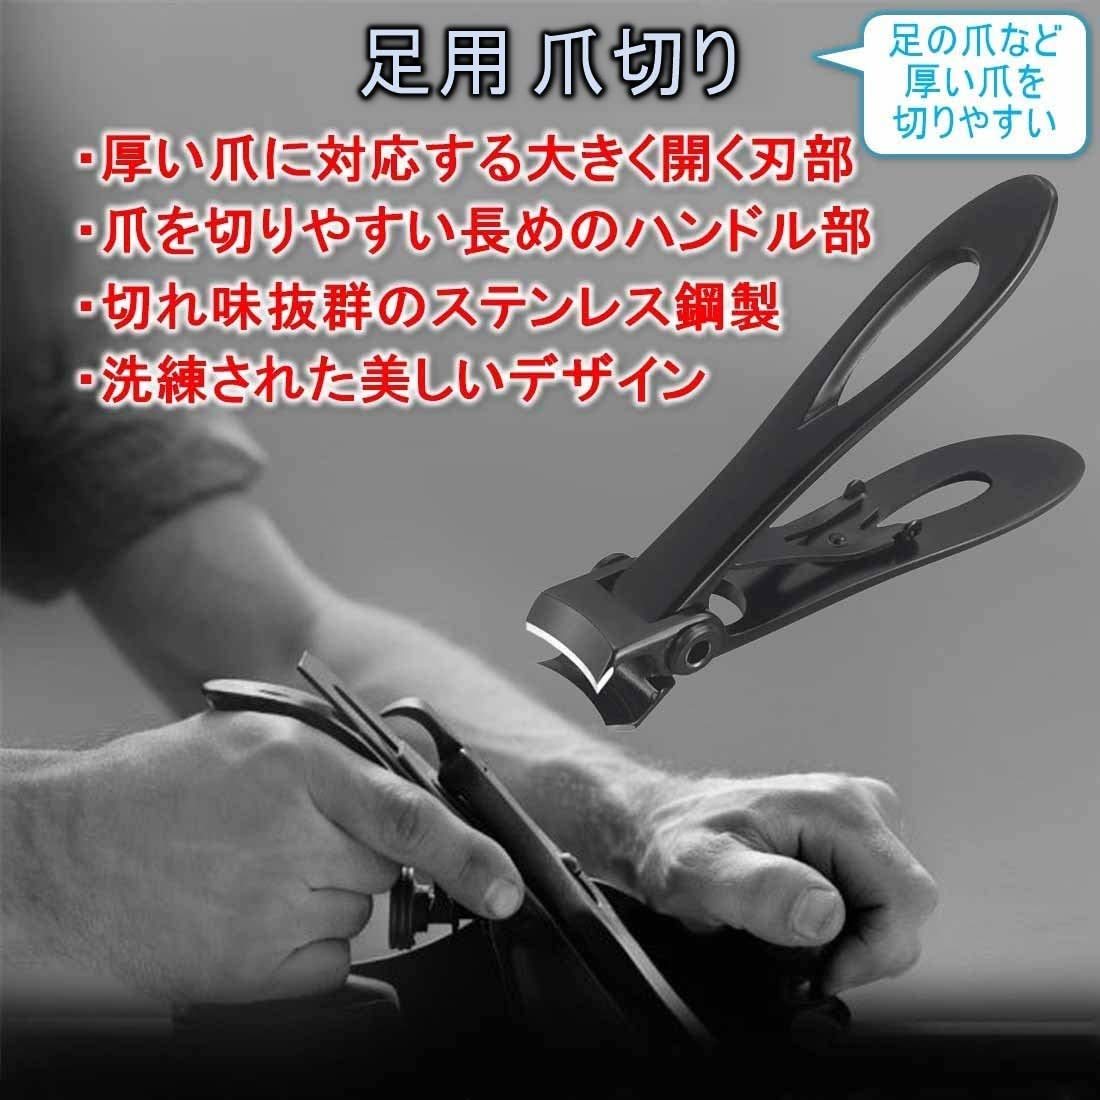 いラインアップ 爪切り おすすめ 巻き爪 大好評 硬い爪 分厚い爪 水虫爪 安全 安心